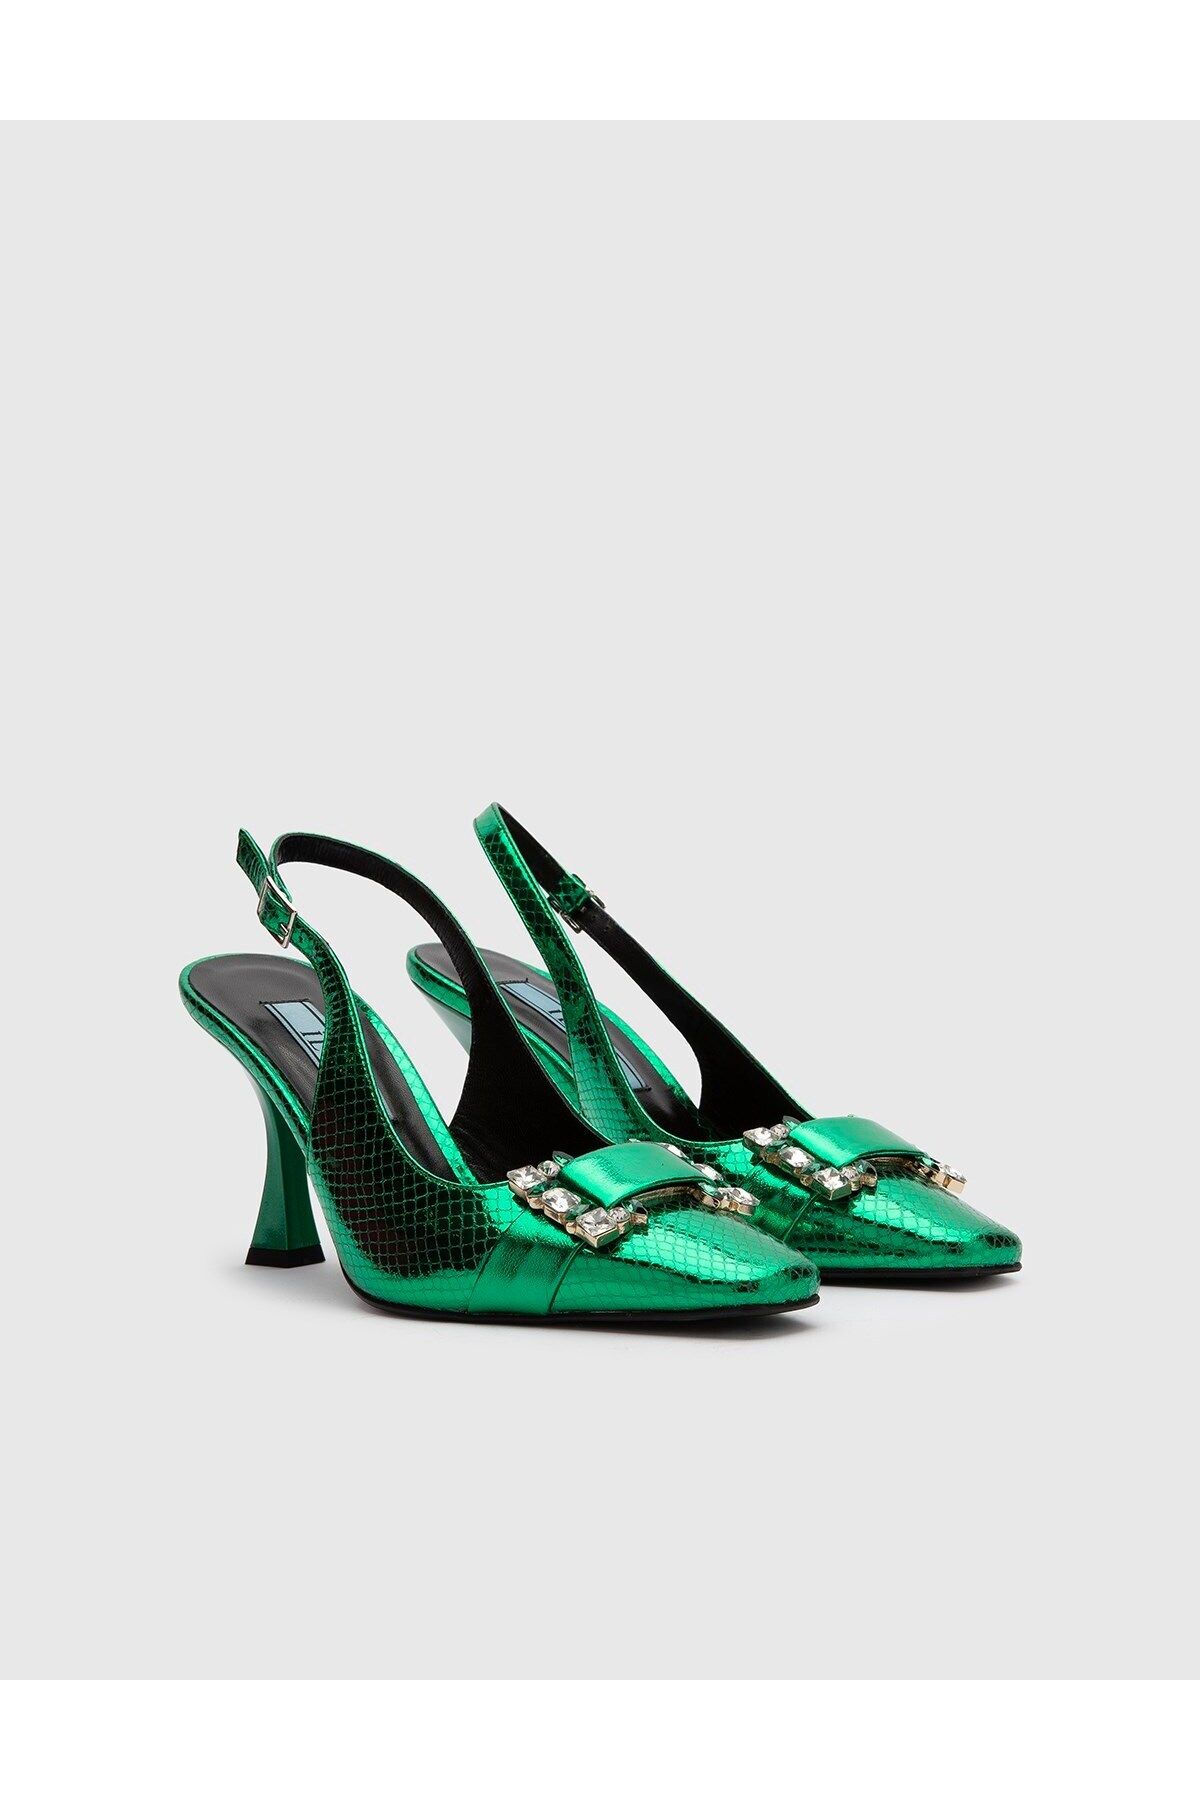 İlvi Patricia Hakiki Baskılı Deri Kadın Yeşil Topuklu Sandalet